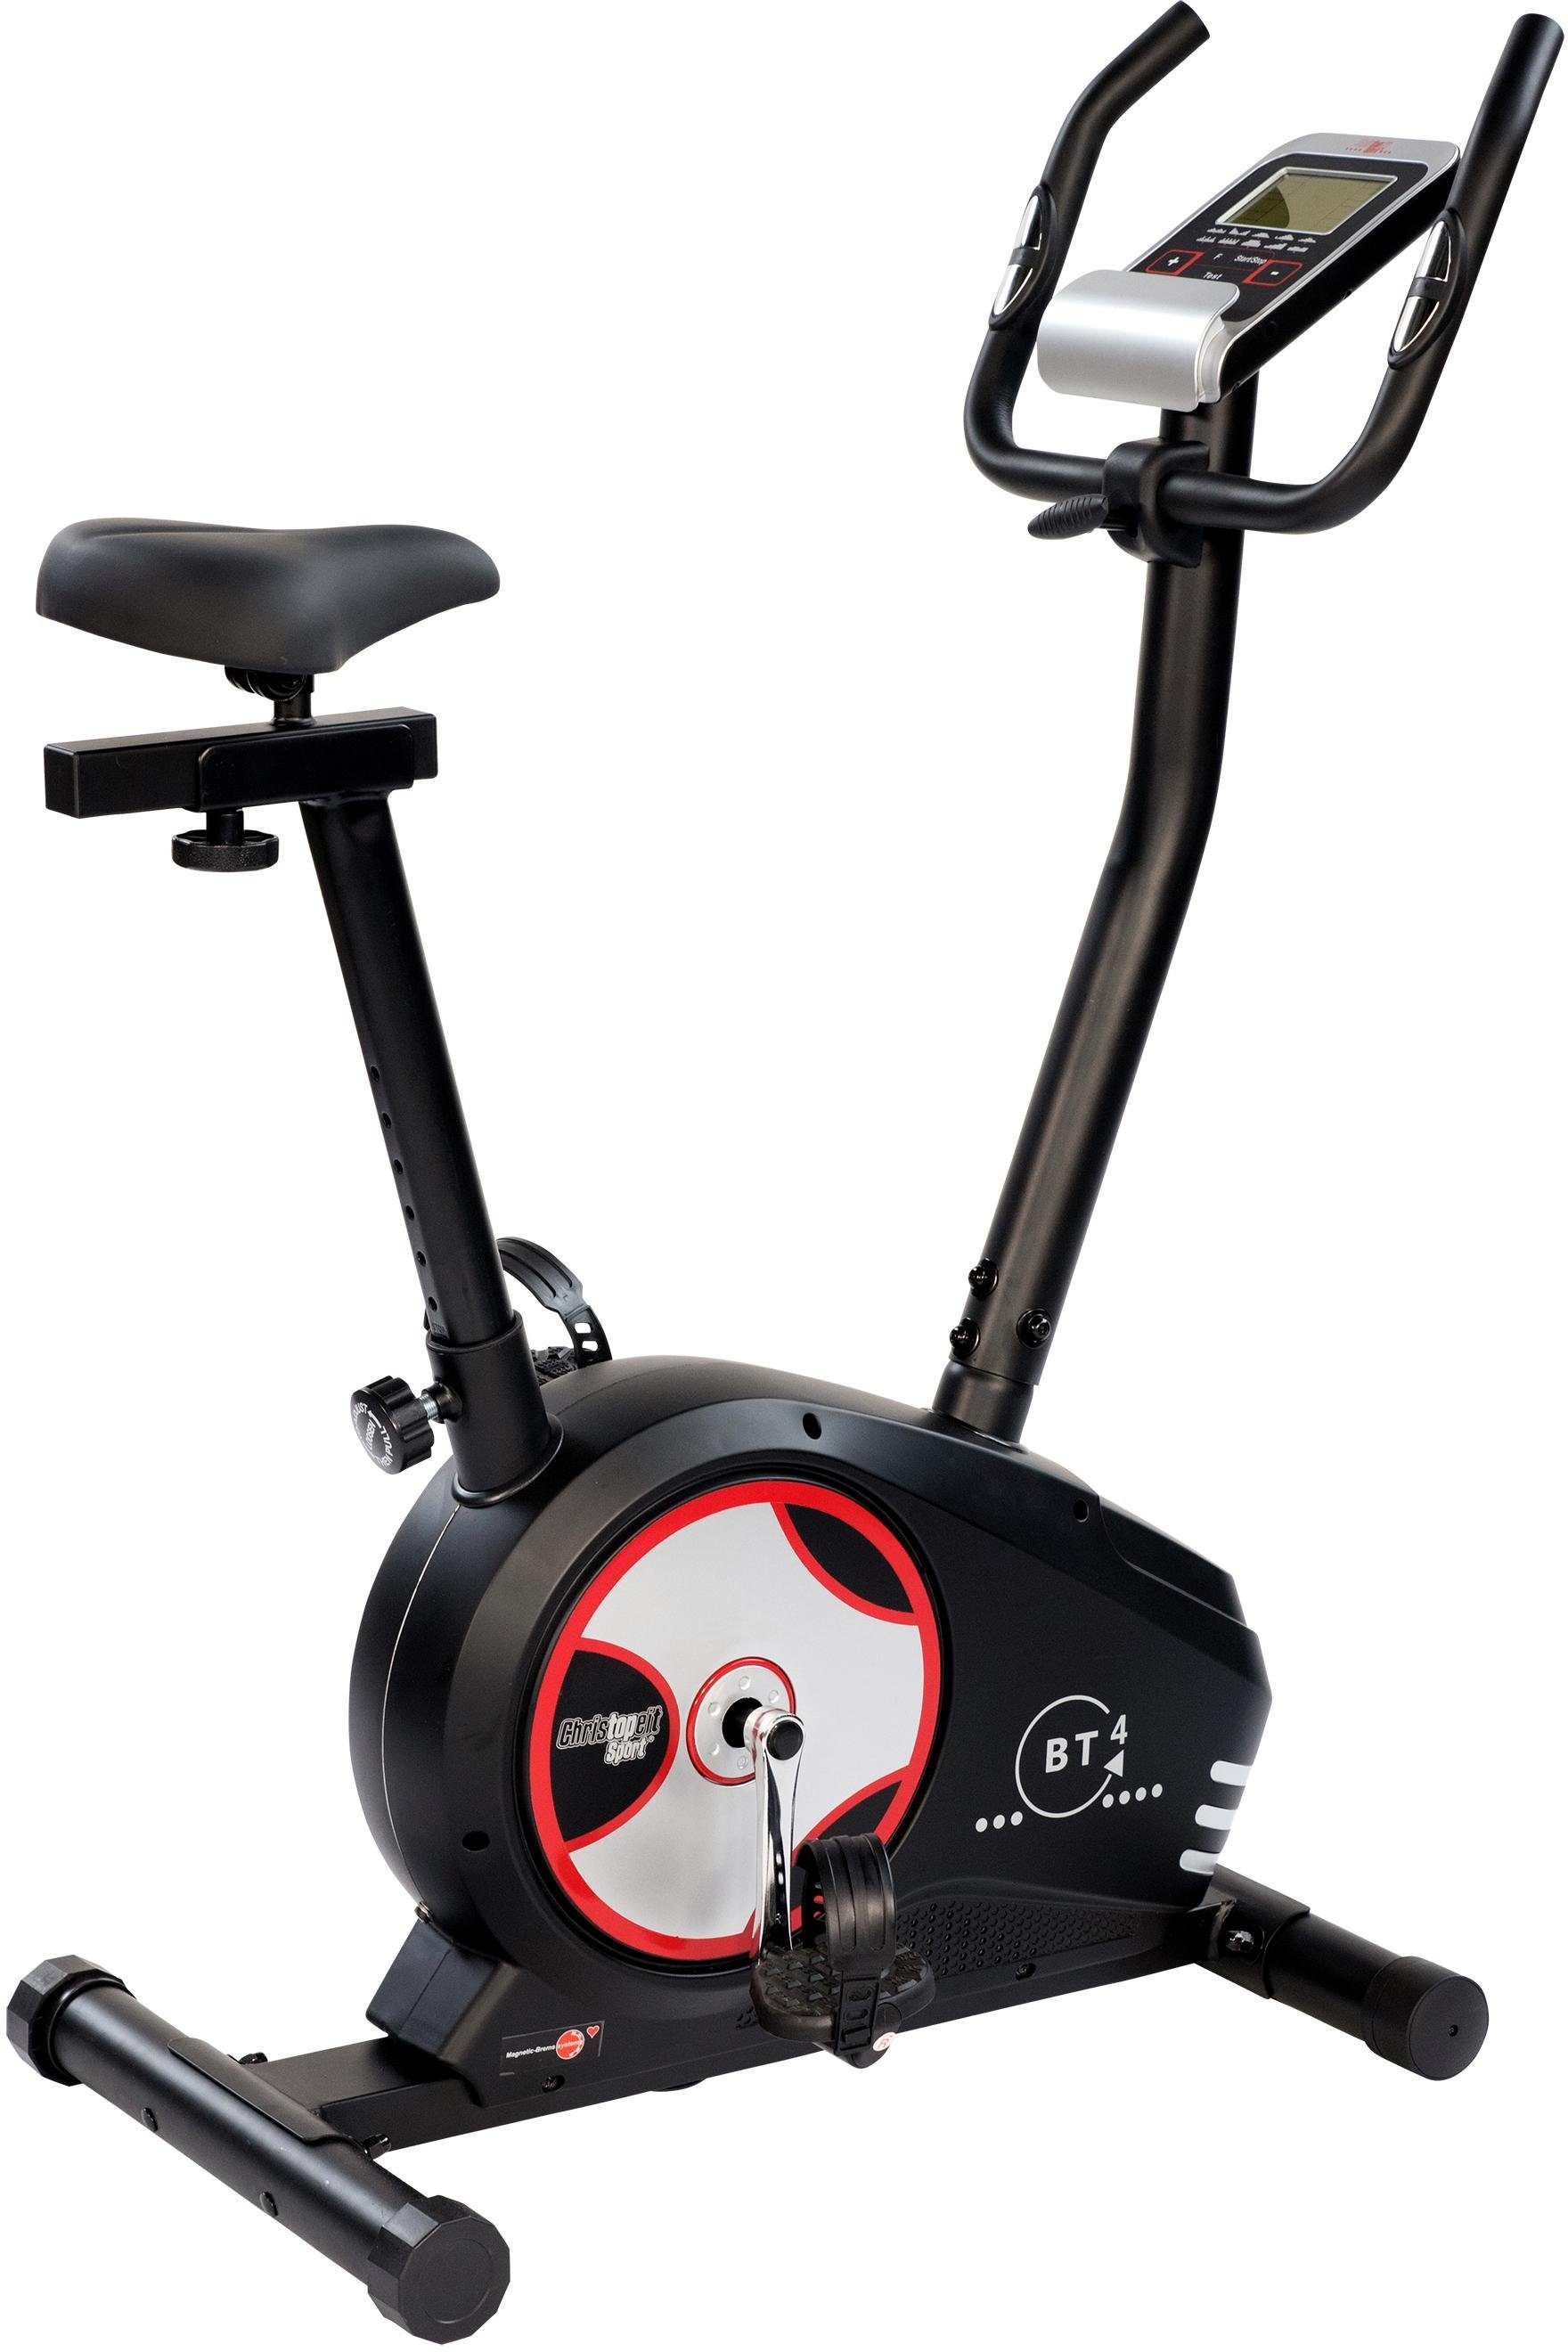 Christopeit Sport® Ergometer »BT 4«, Komfortable Sitzposition durch  verstellbaren Lenker / Sattel online kaufen | OTTO